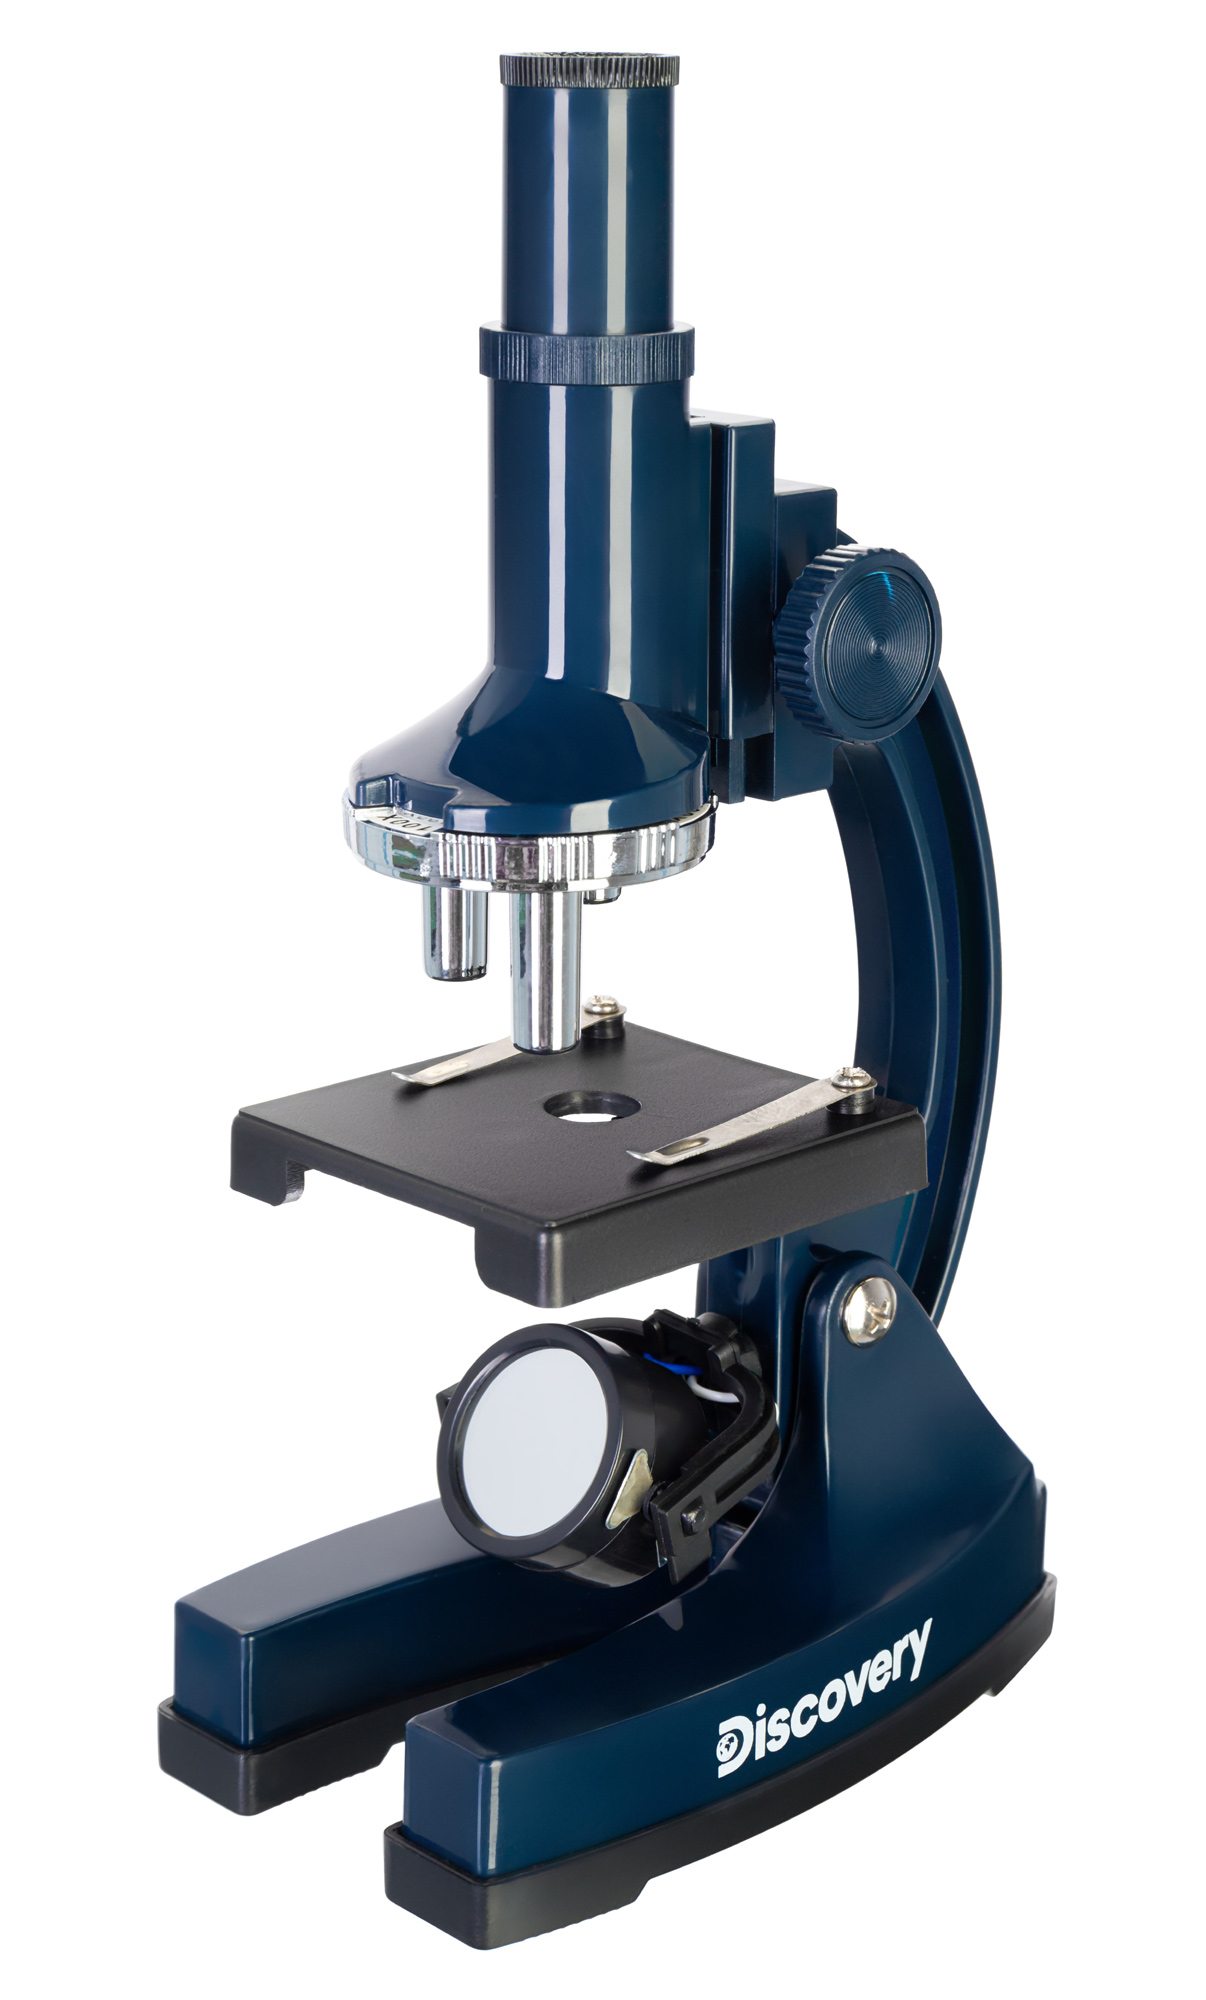 Микроскоп Levenhuk Discovery Centi 02 с книгой 78241 микроскоп discovery pico terra с книгой